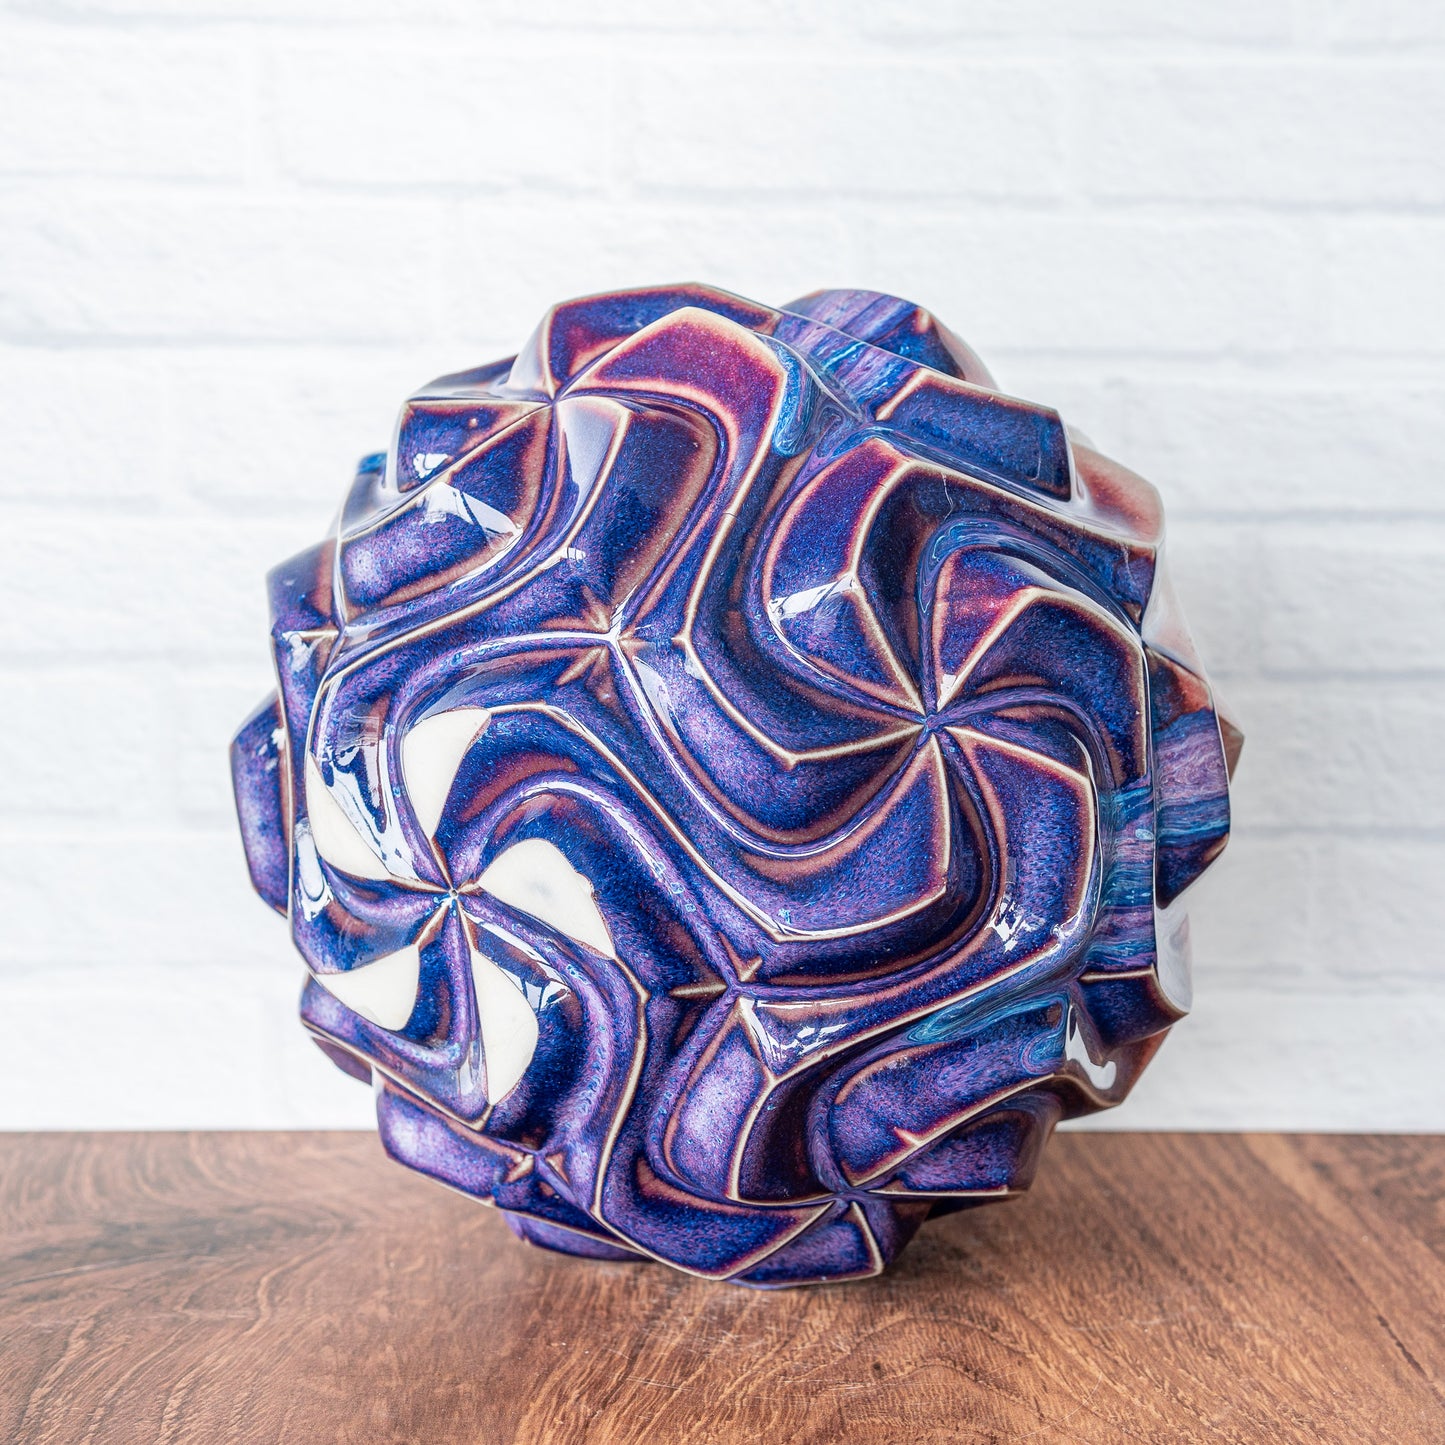 'Magenta Fire' Porcelain Spirahedron